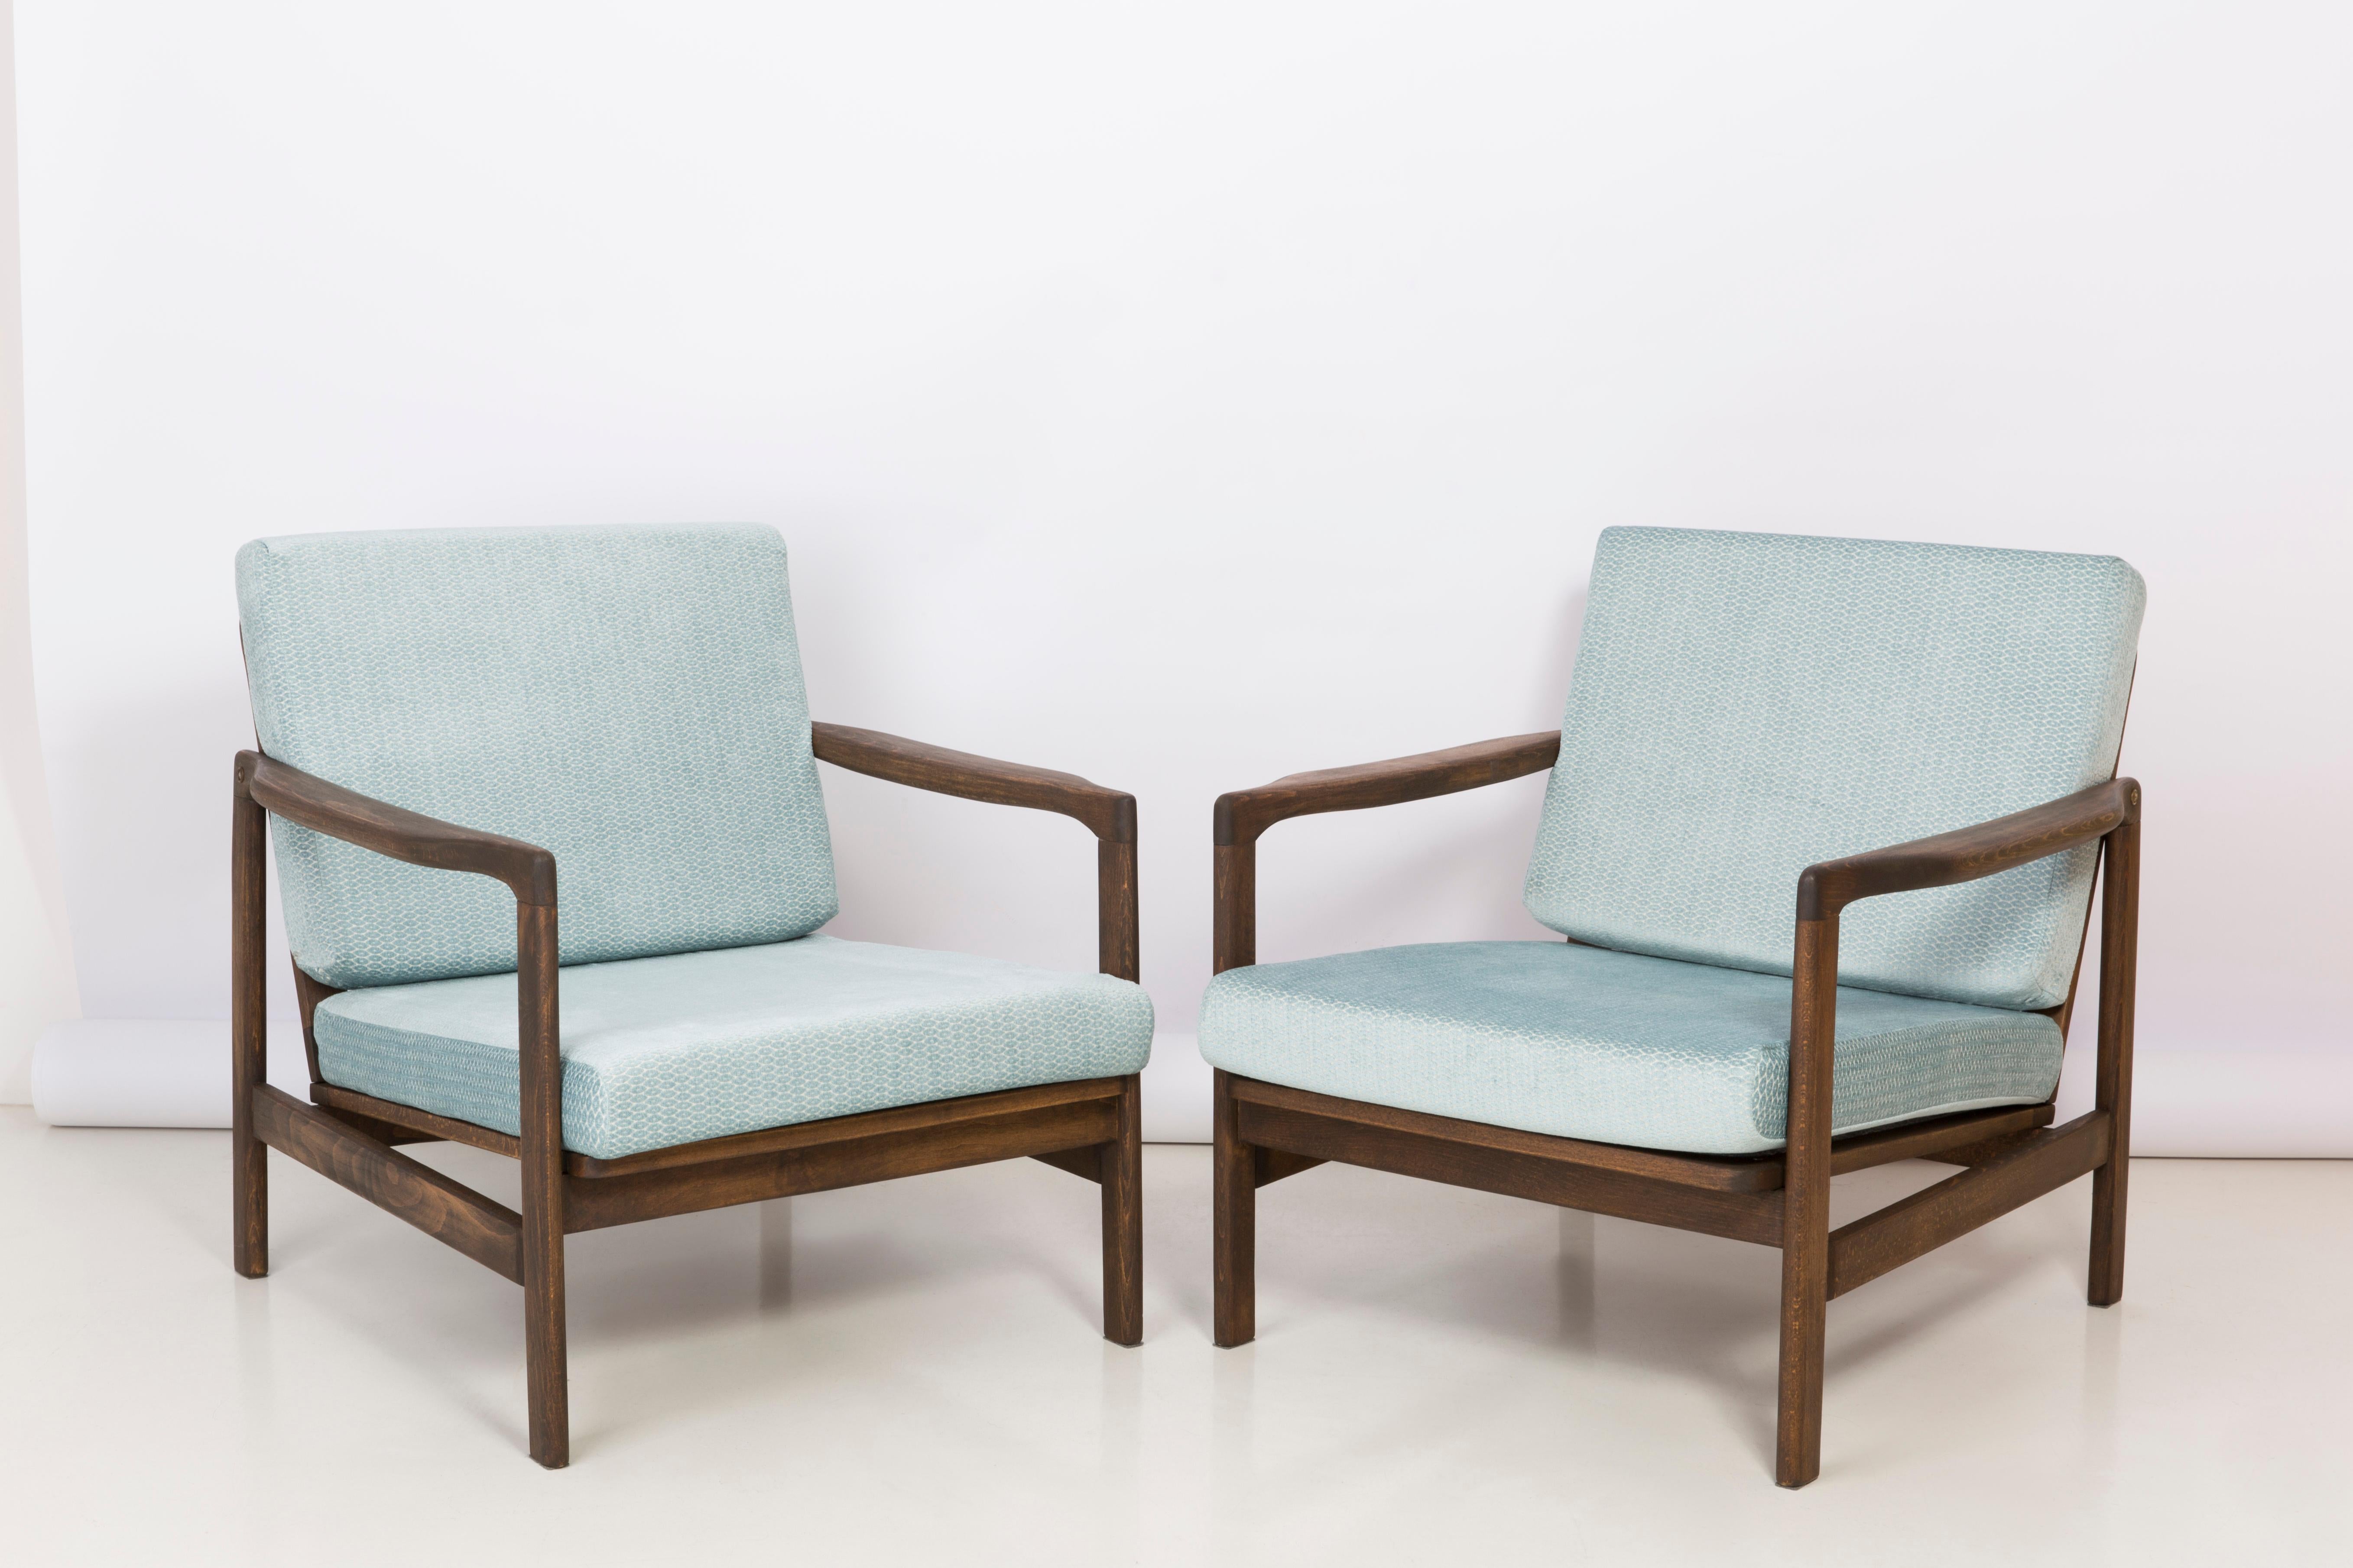 Le fauteuil B-7522 a été conçu dans les années 1960 par Zenon Baczyk, il a été produit par les usines de meubles Swarzedz en Pologne. Meubles conservés en parfait état, après une rénovation complète de la tapisserie et du bois. Fauteuil stable et